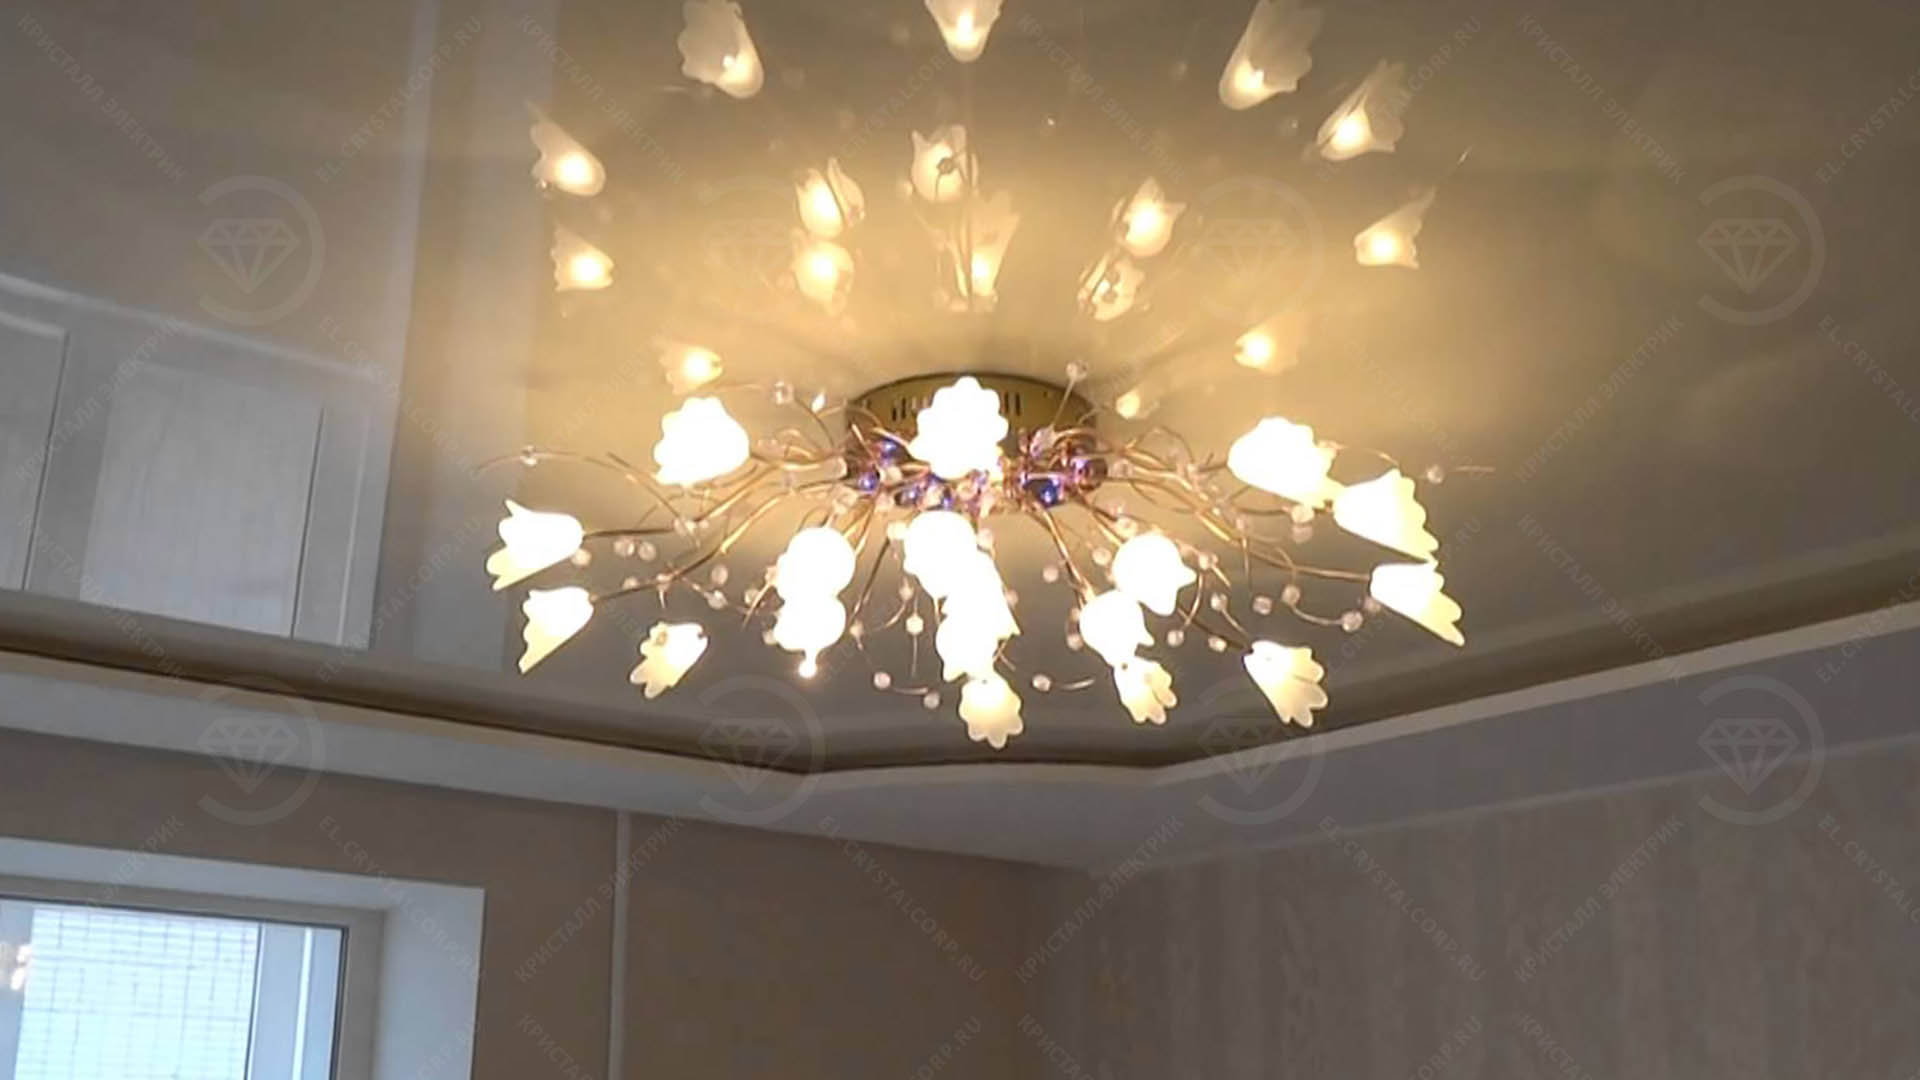 Ремонт в Хабаровске люстр и светильников, устранение мигающих ламп